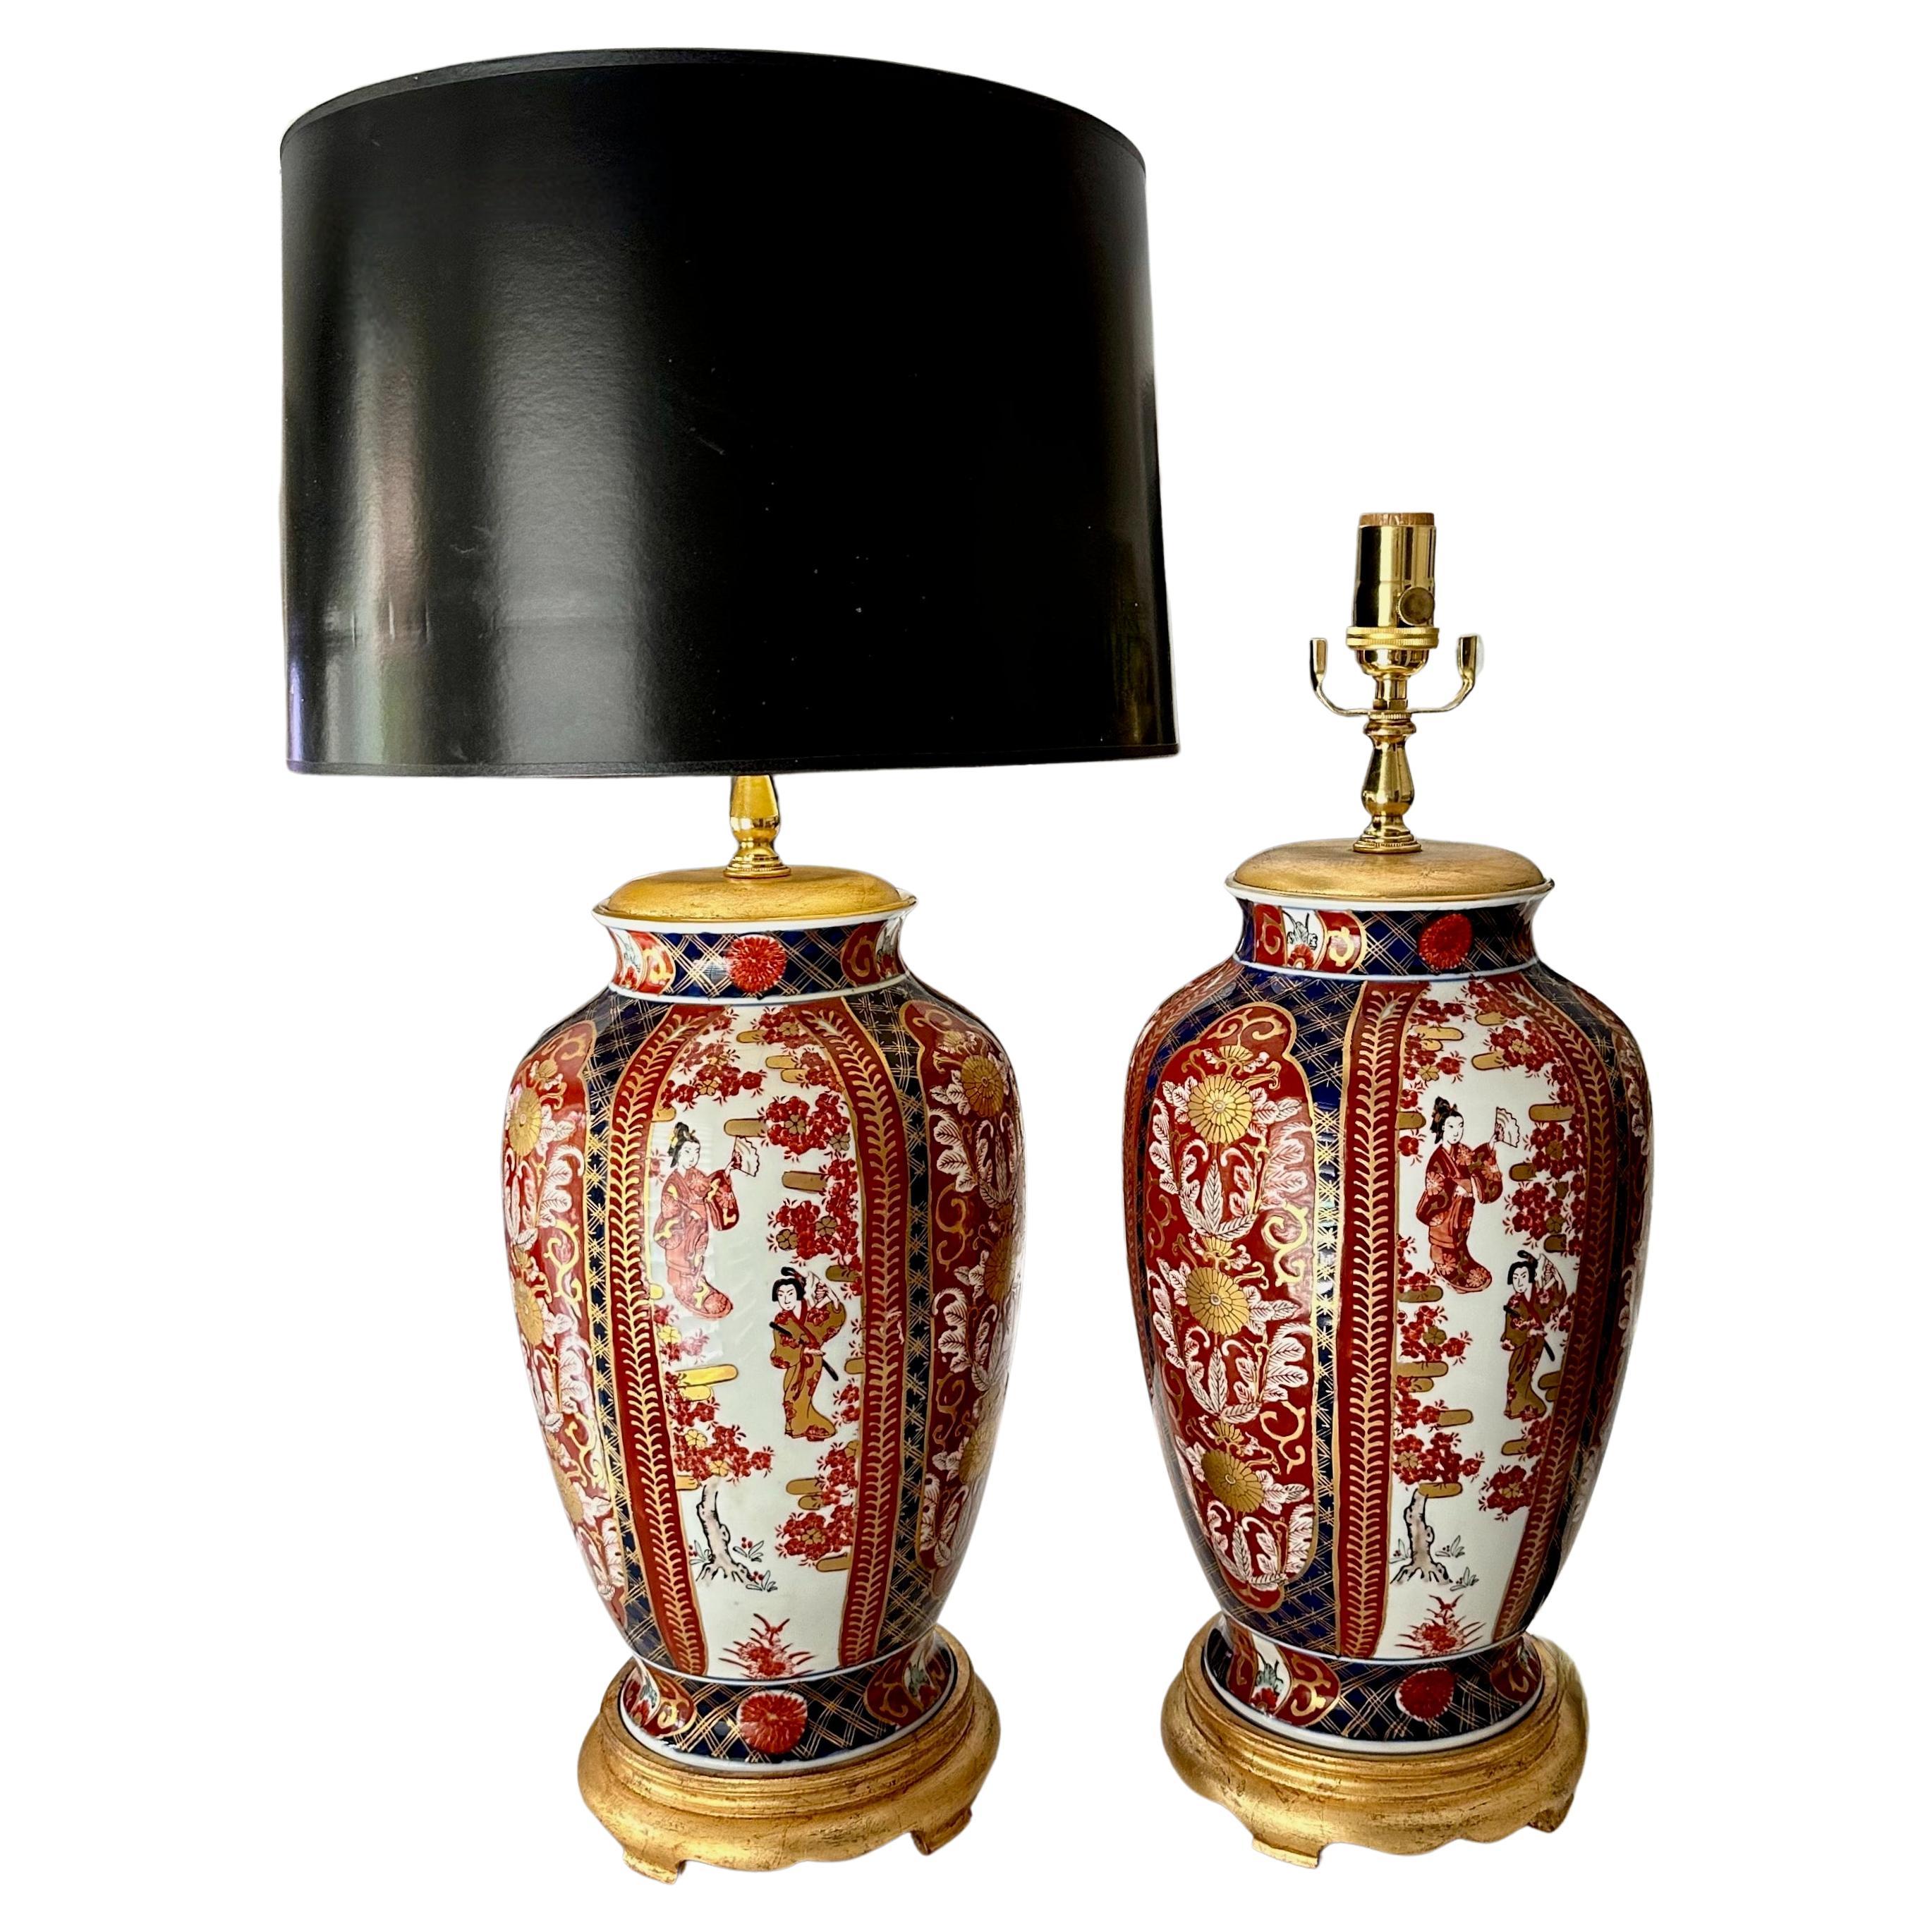 Pair of Japanese Asian Imari Porcelain Table Lamps